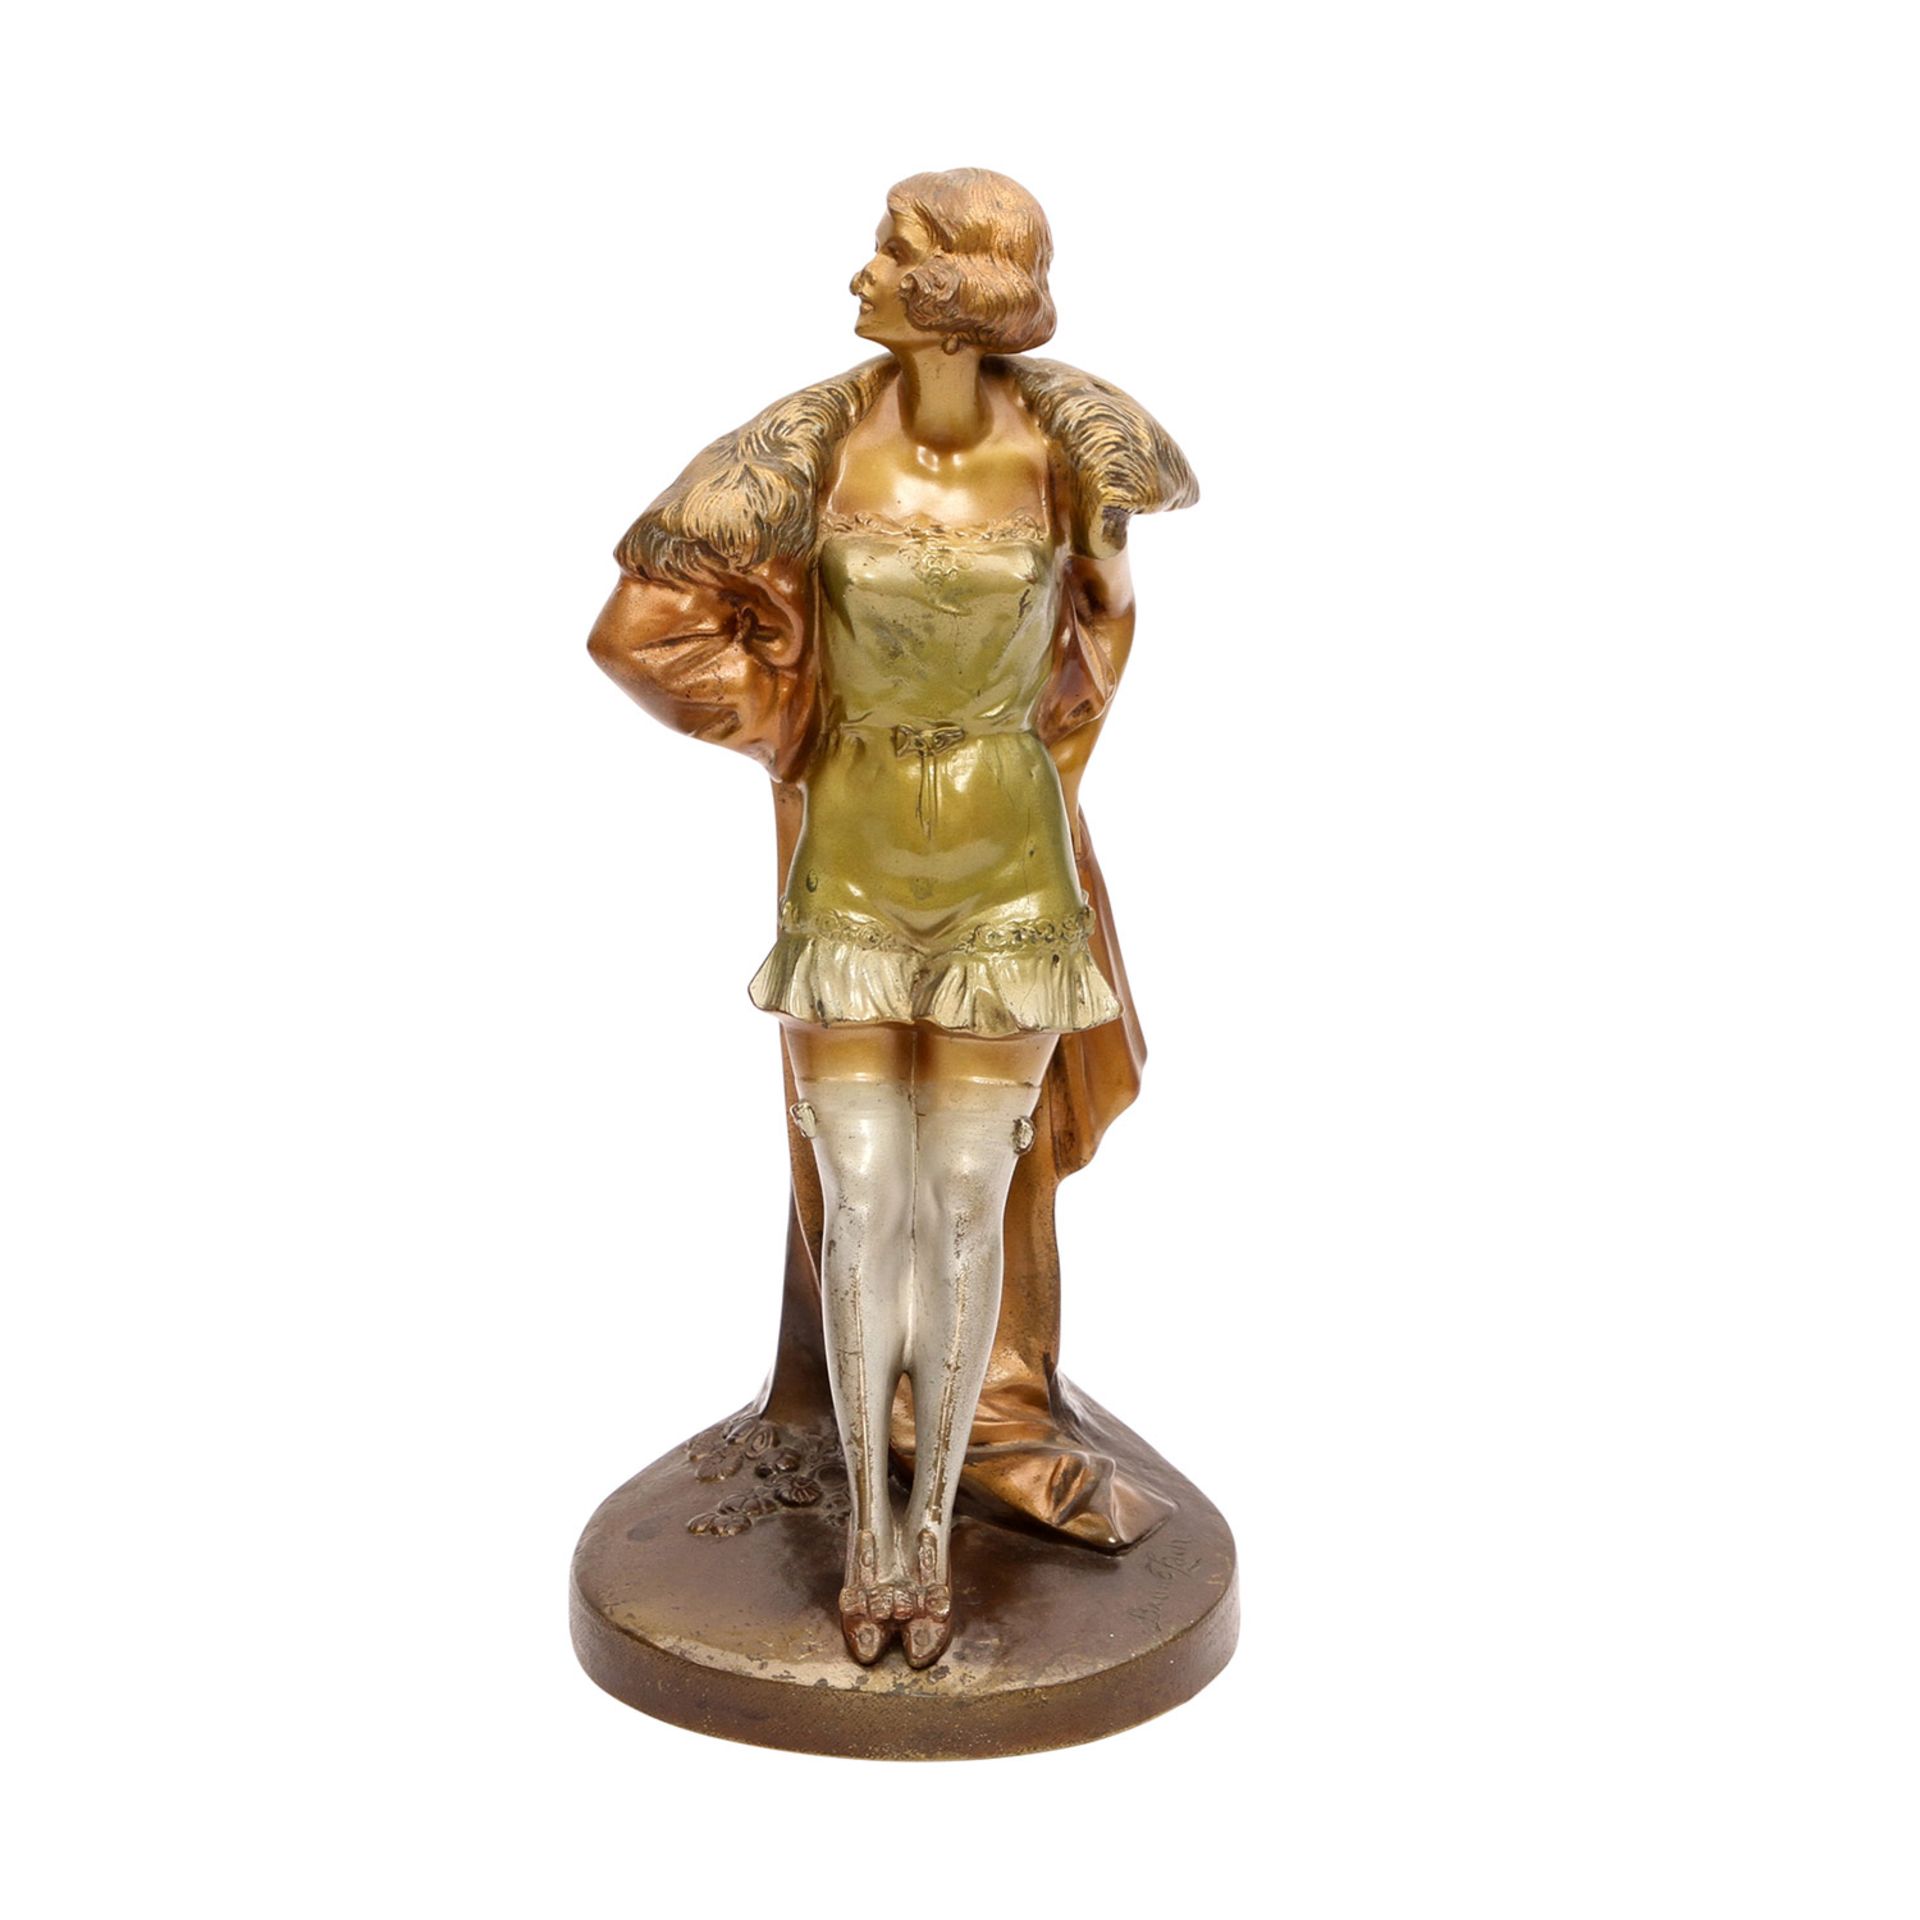 ZACH, BRUNO (1891-1935) 'Stehende Frau mit Strümpfen', 1. Hälfte 20. Jhd.Bronze partiell